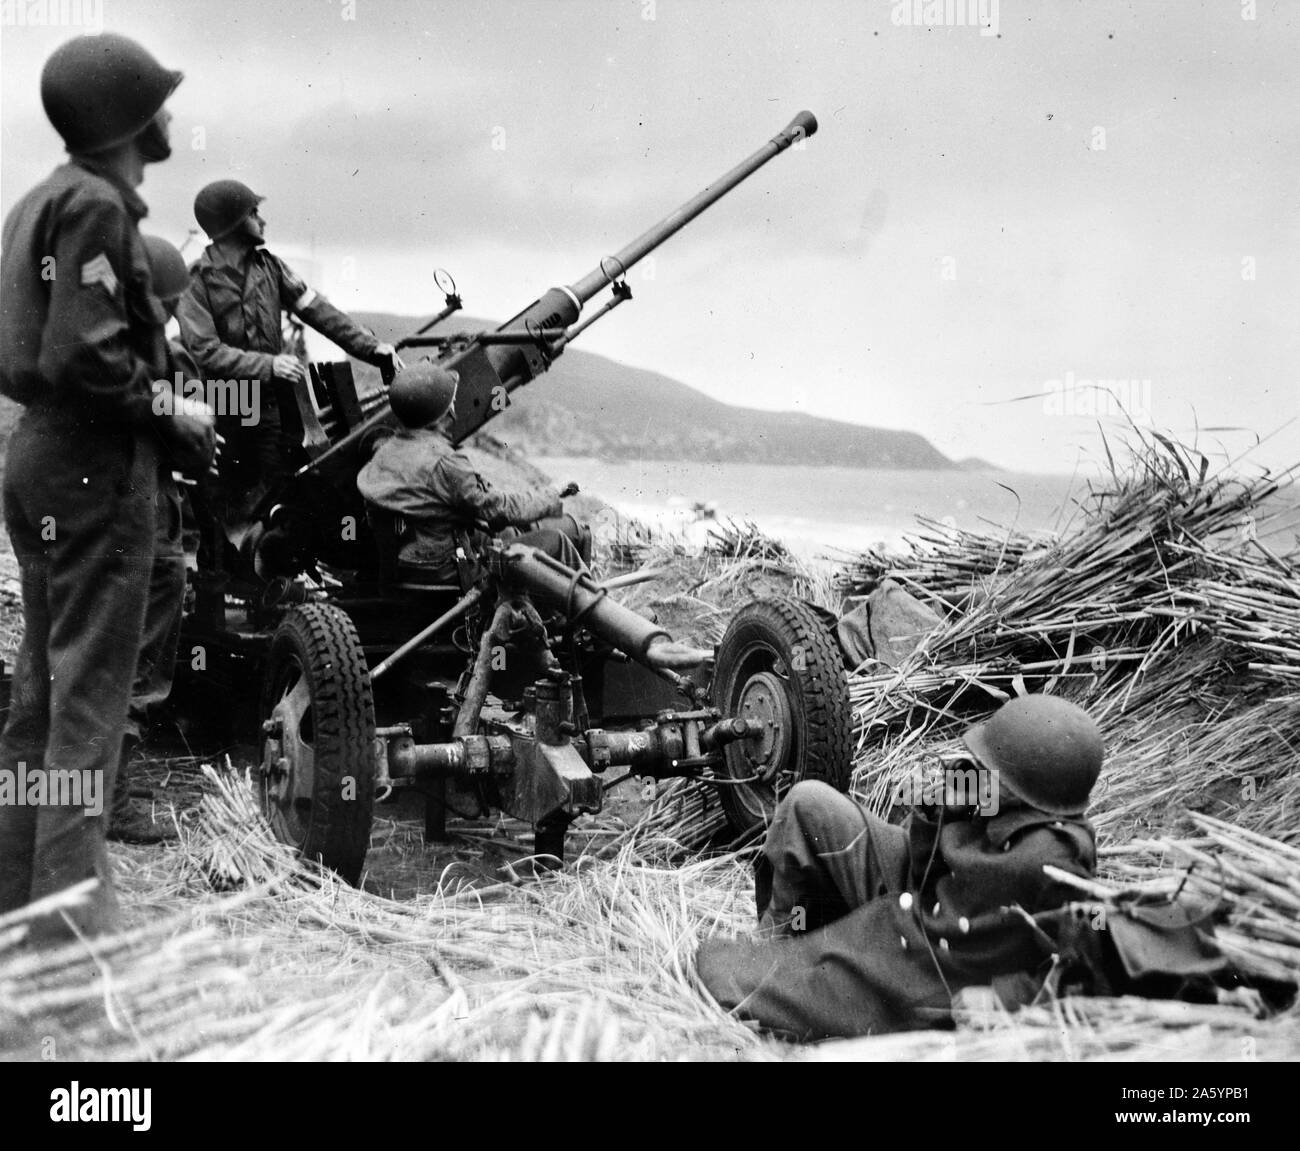 Canon Bofors Anti-aériens dans en position sur un monticule surplombant la plage en Algérie, durant la Seconde Guerre mondiale. Datée 1943 Banque D'Images